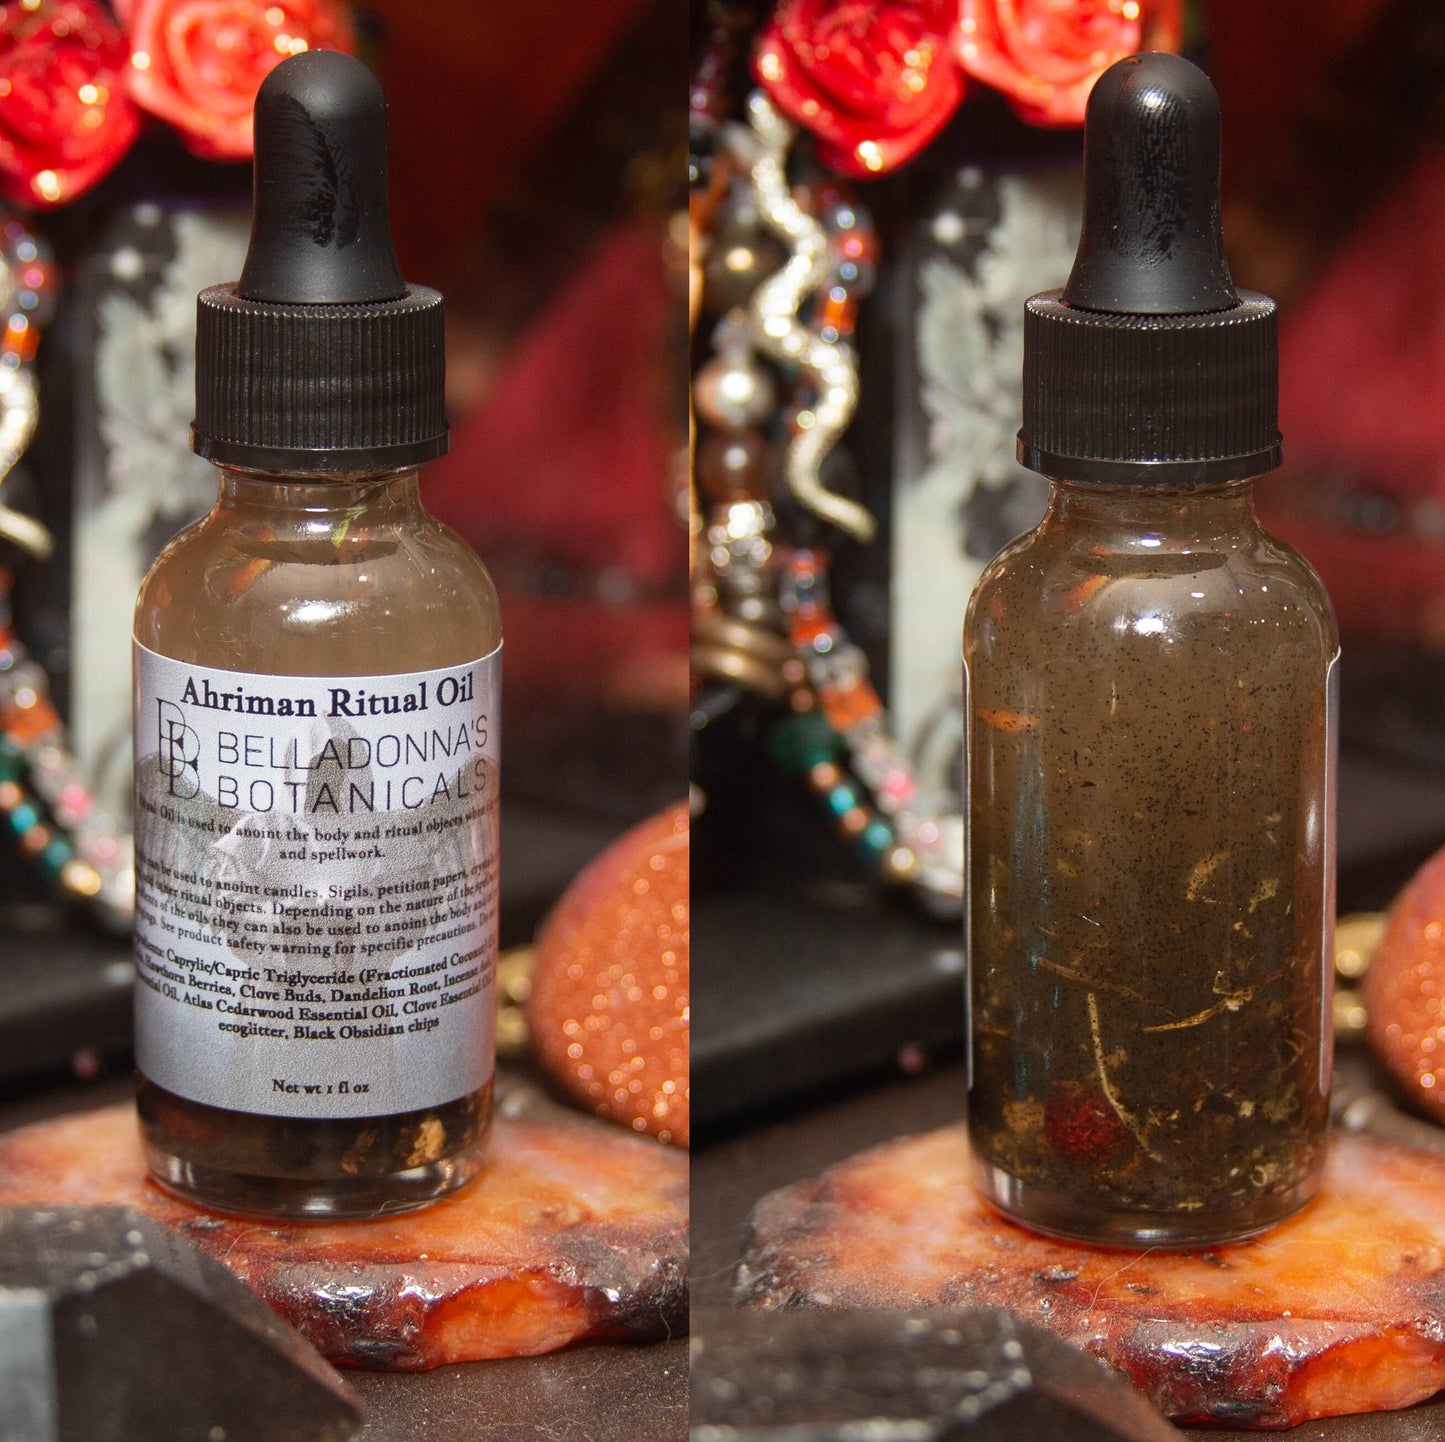 Custom Spell Oils for Demons and Infernals